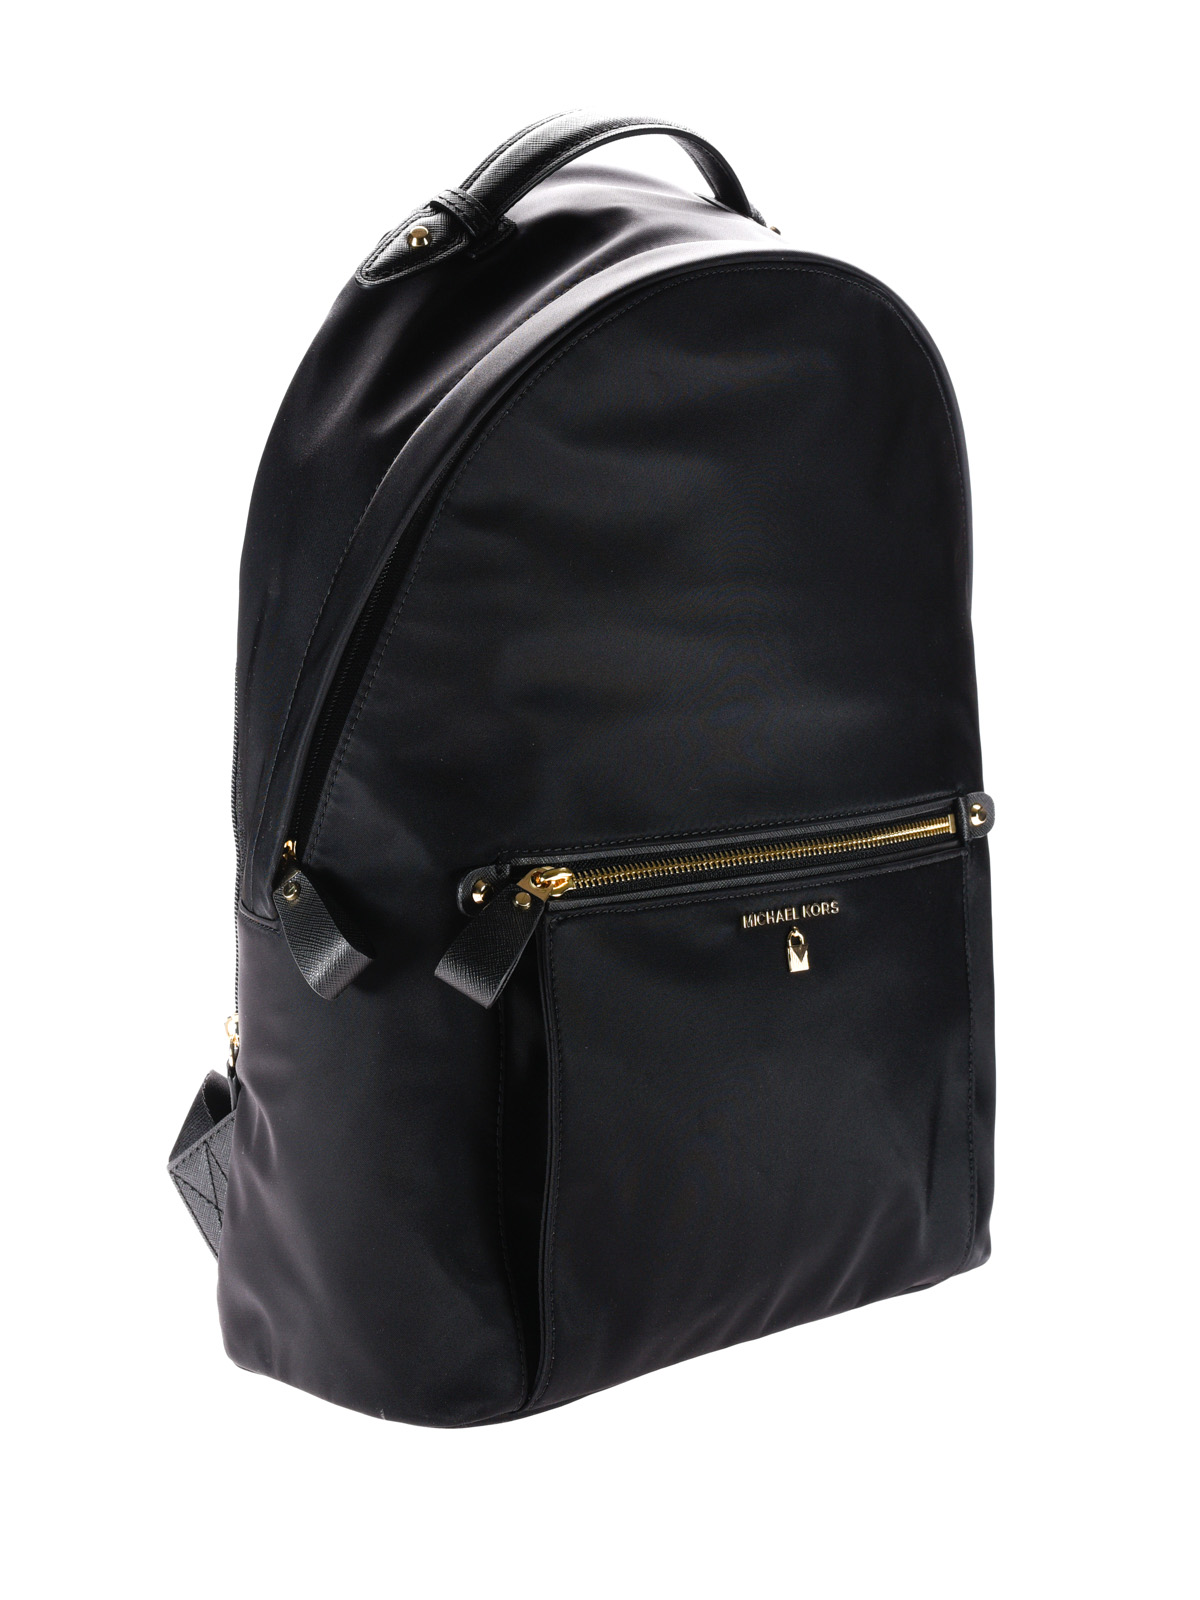 michael kors kelsey nylon backpack